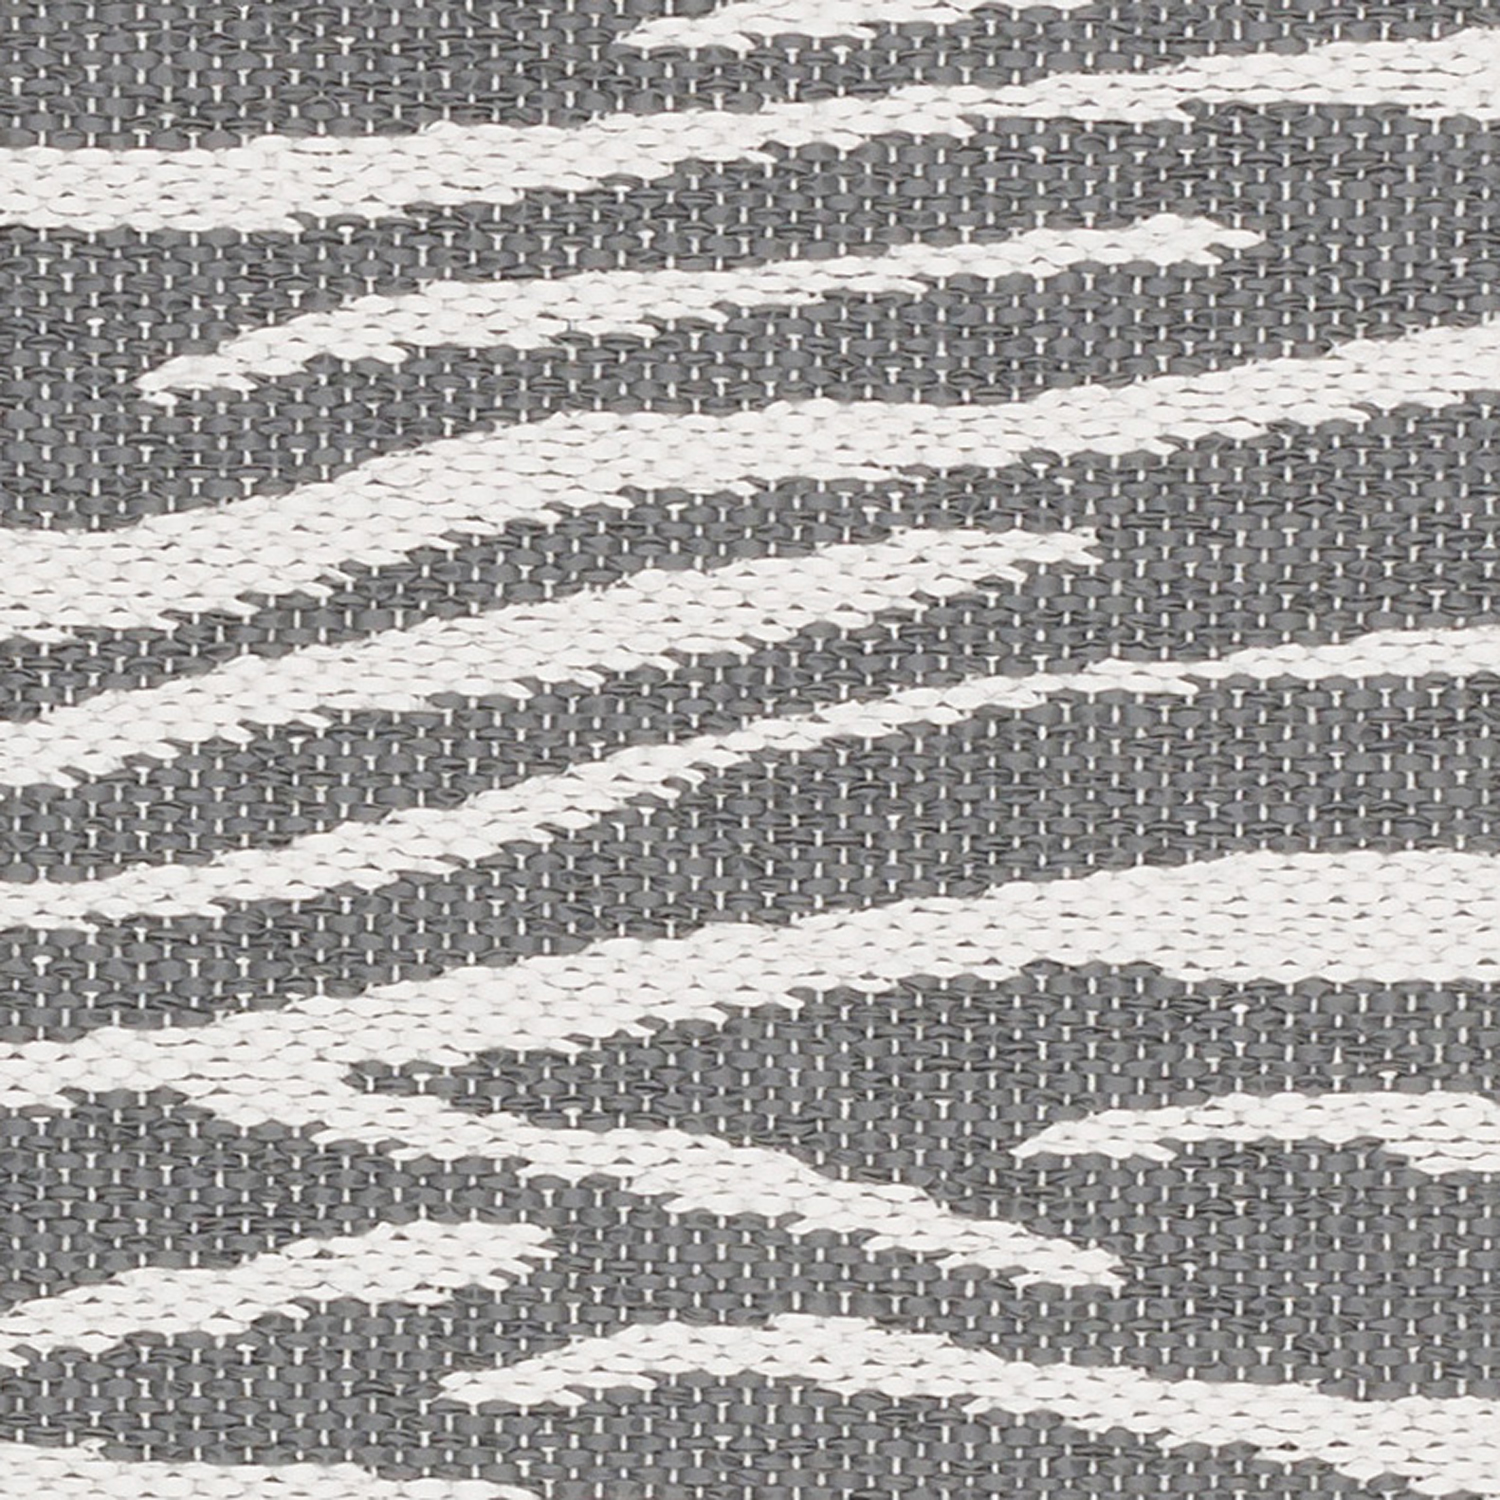 Horredsmattan Teppich Zebra Grey für Innen und Aussen Made in Sweden since 1956 Hohe UV-Beständigkeit Pflegeleicht